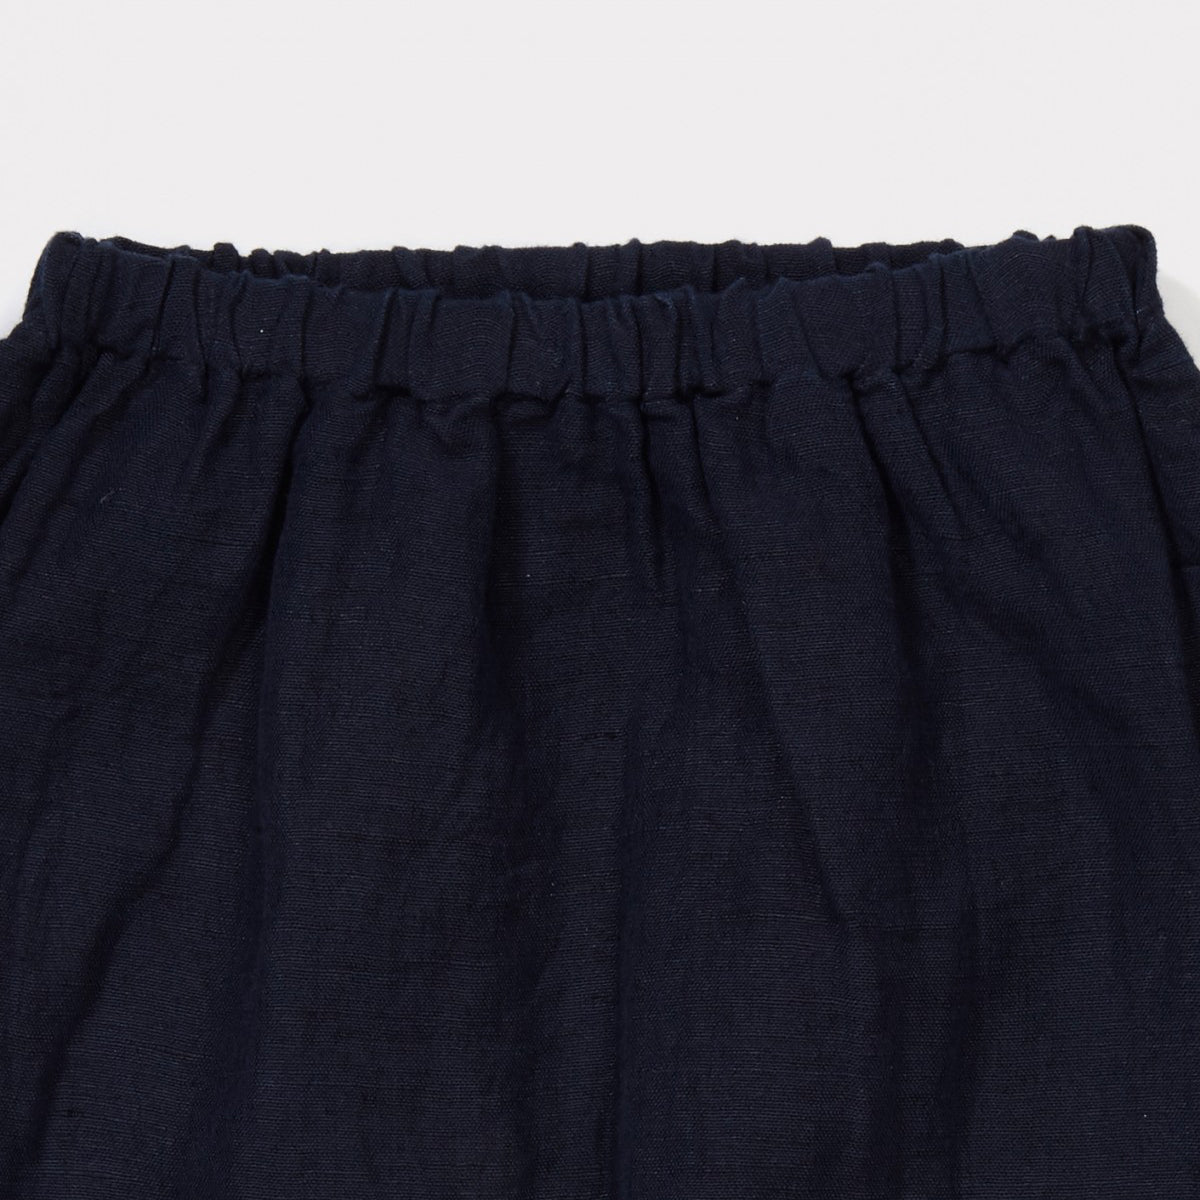 Caramel London Oku Linen Baby Trouser in Navy Blue | BIEN BIEN